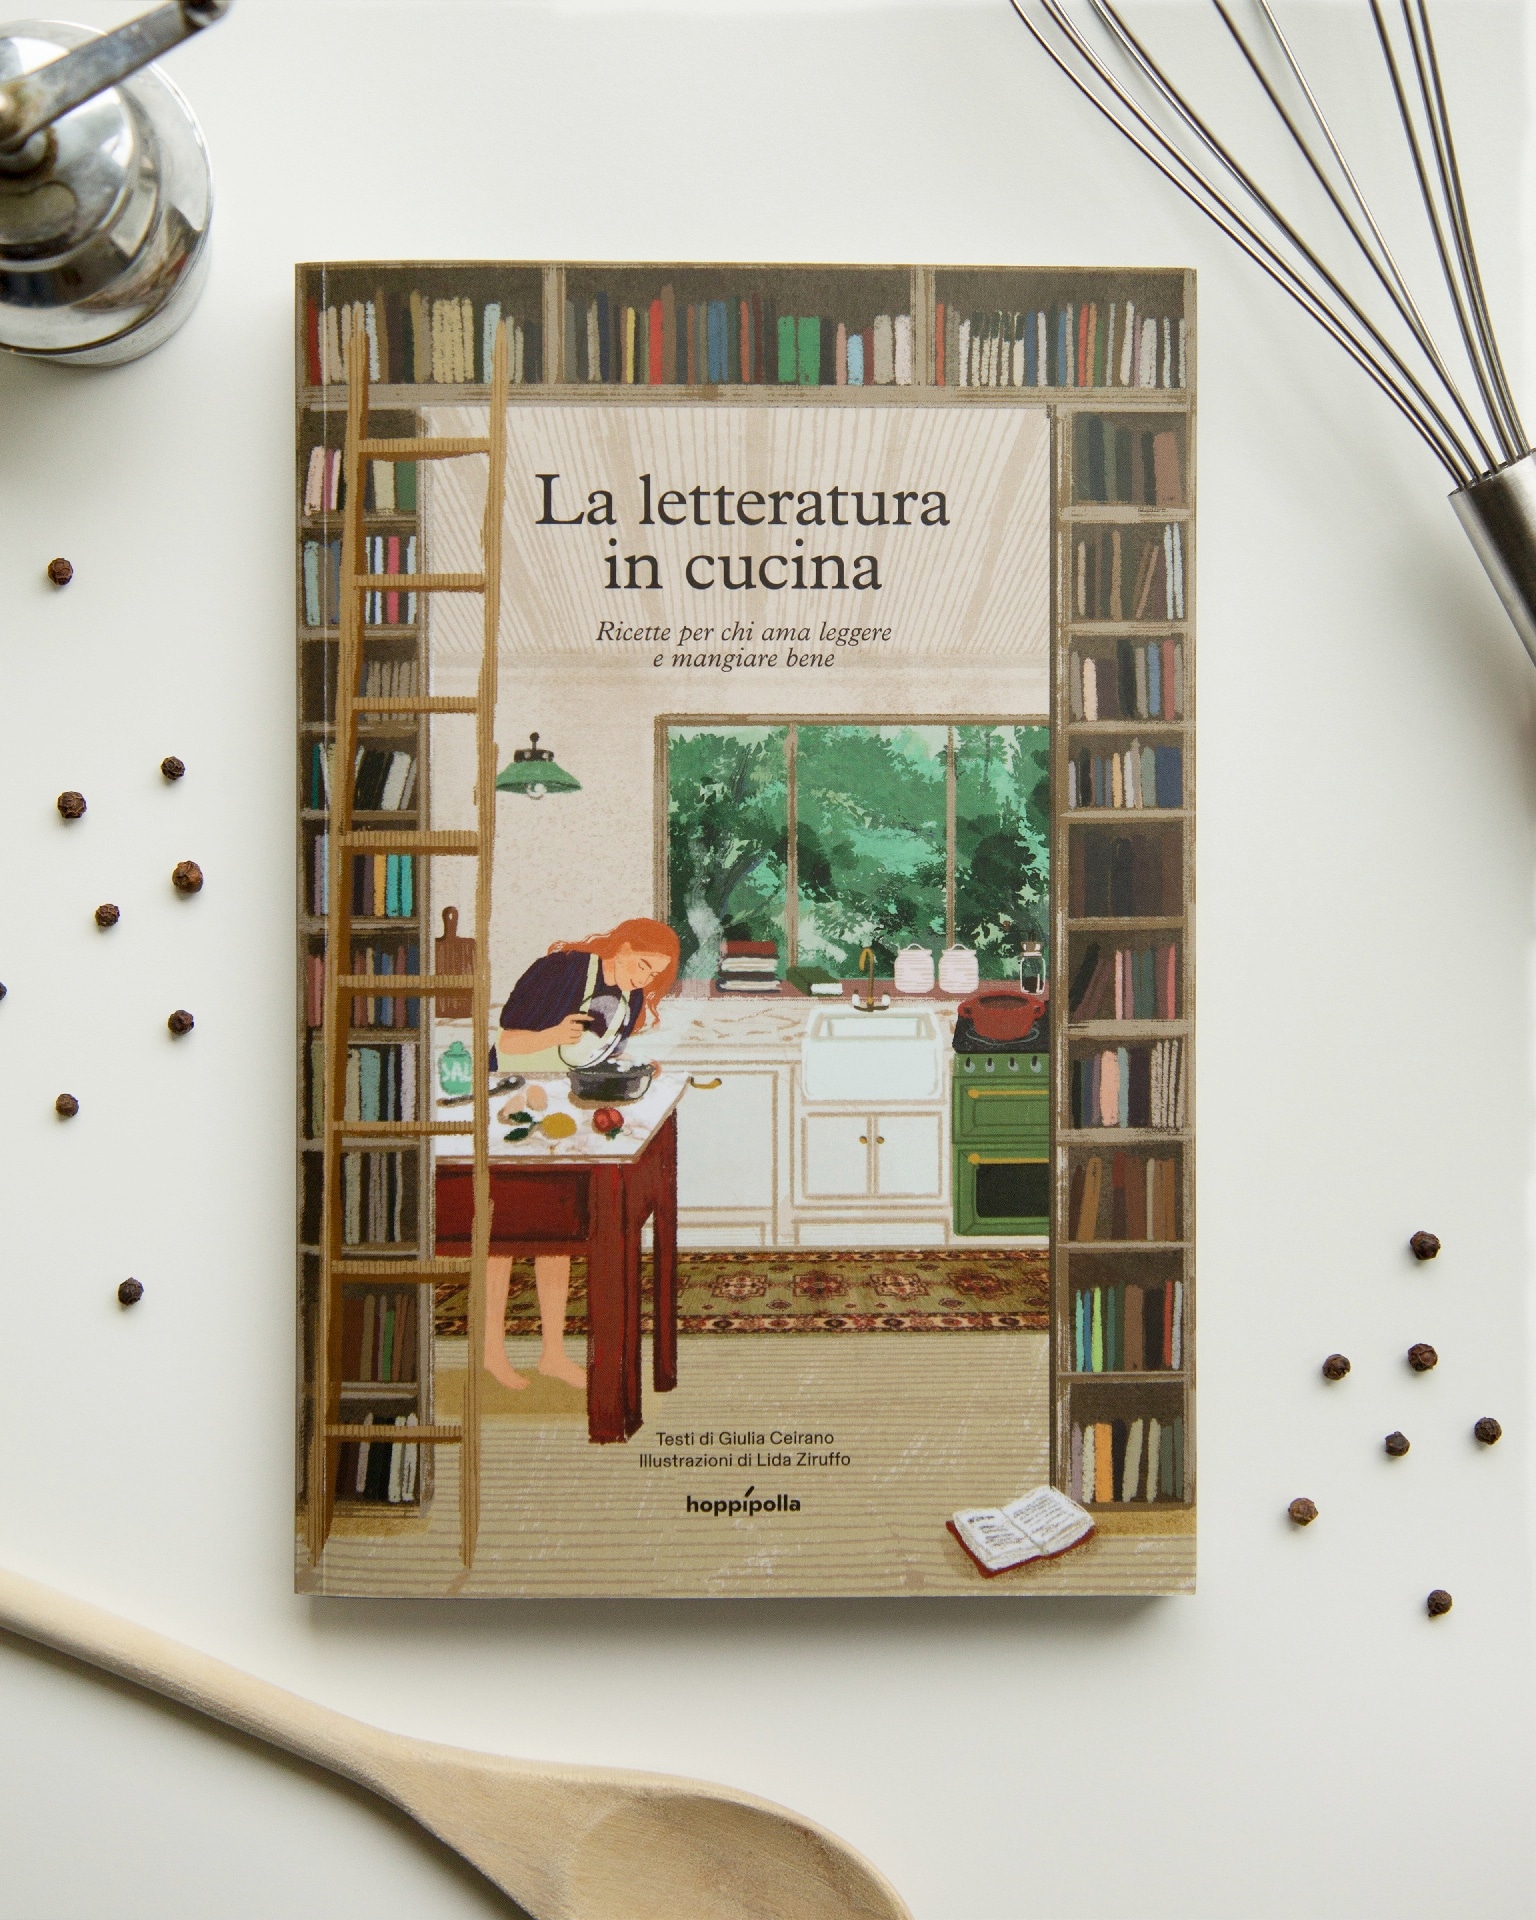 La letteratura in cucina. Ricette per chi ama leggere e mangiare bene, di Giulia Ceirano e Lida Ziruffo (Hoppìpolla)